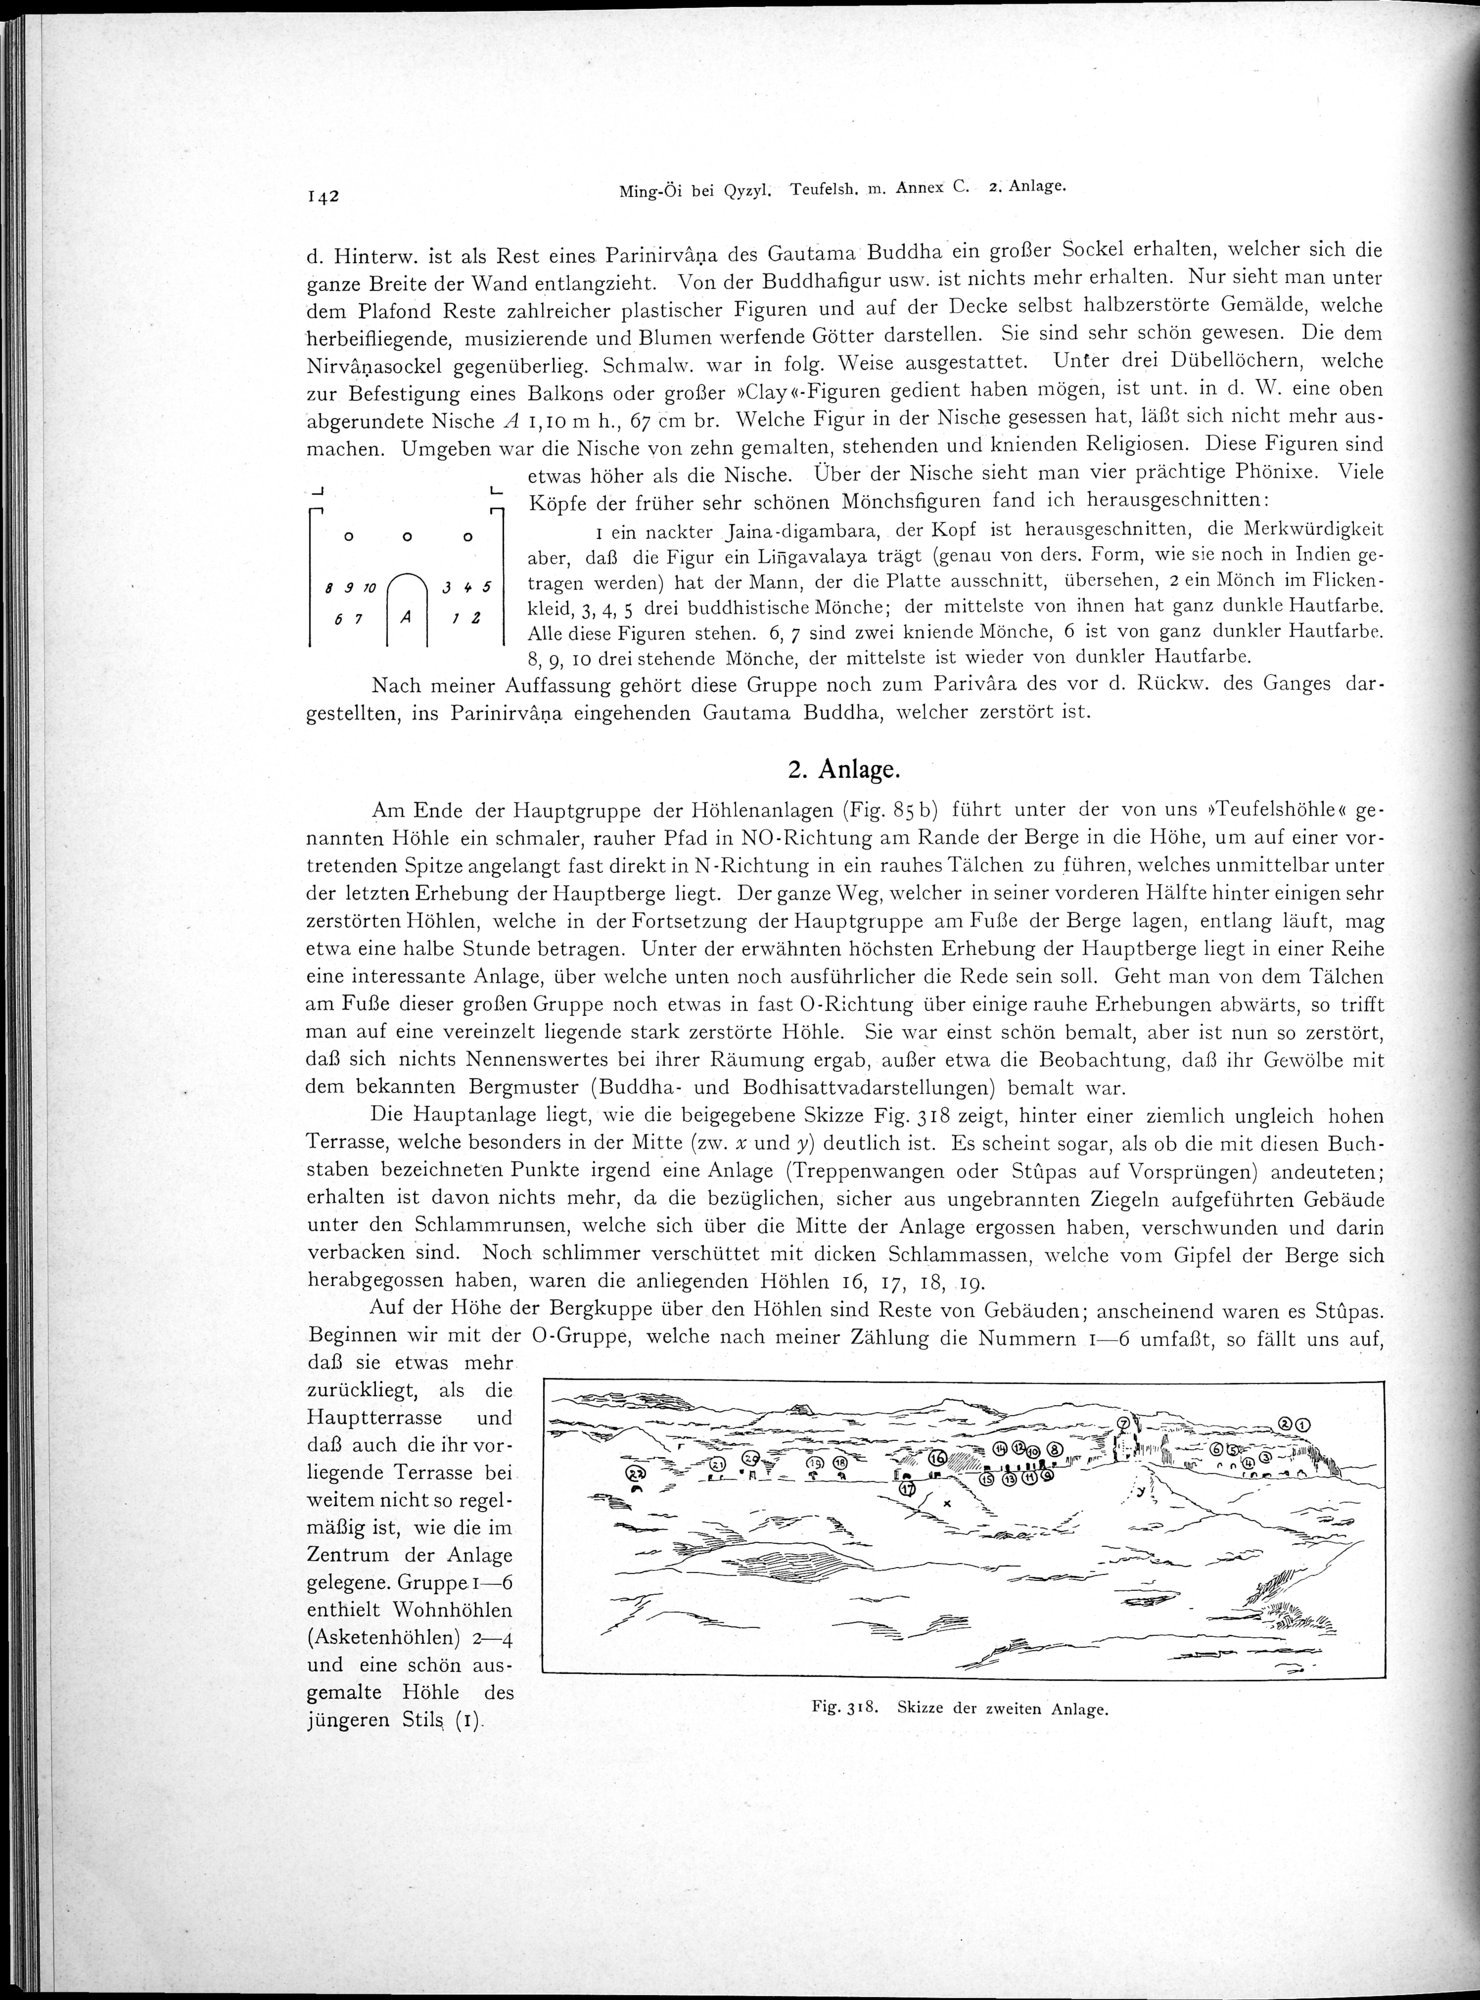 Altbuddhistische Kultstätten in Chinesisch-Turkistan : vol.1 / Page 148 (Grayscale High Resolution Image)